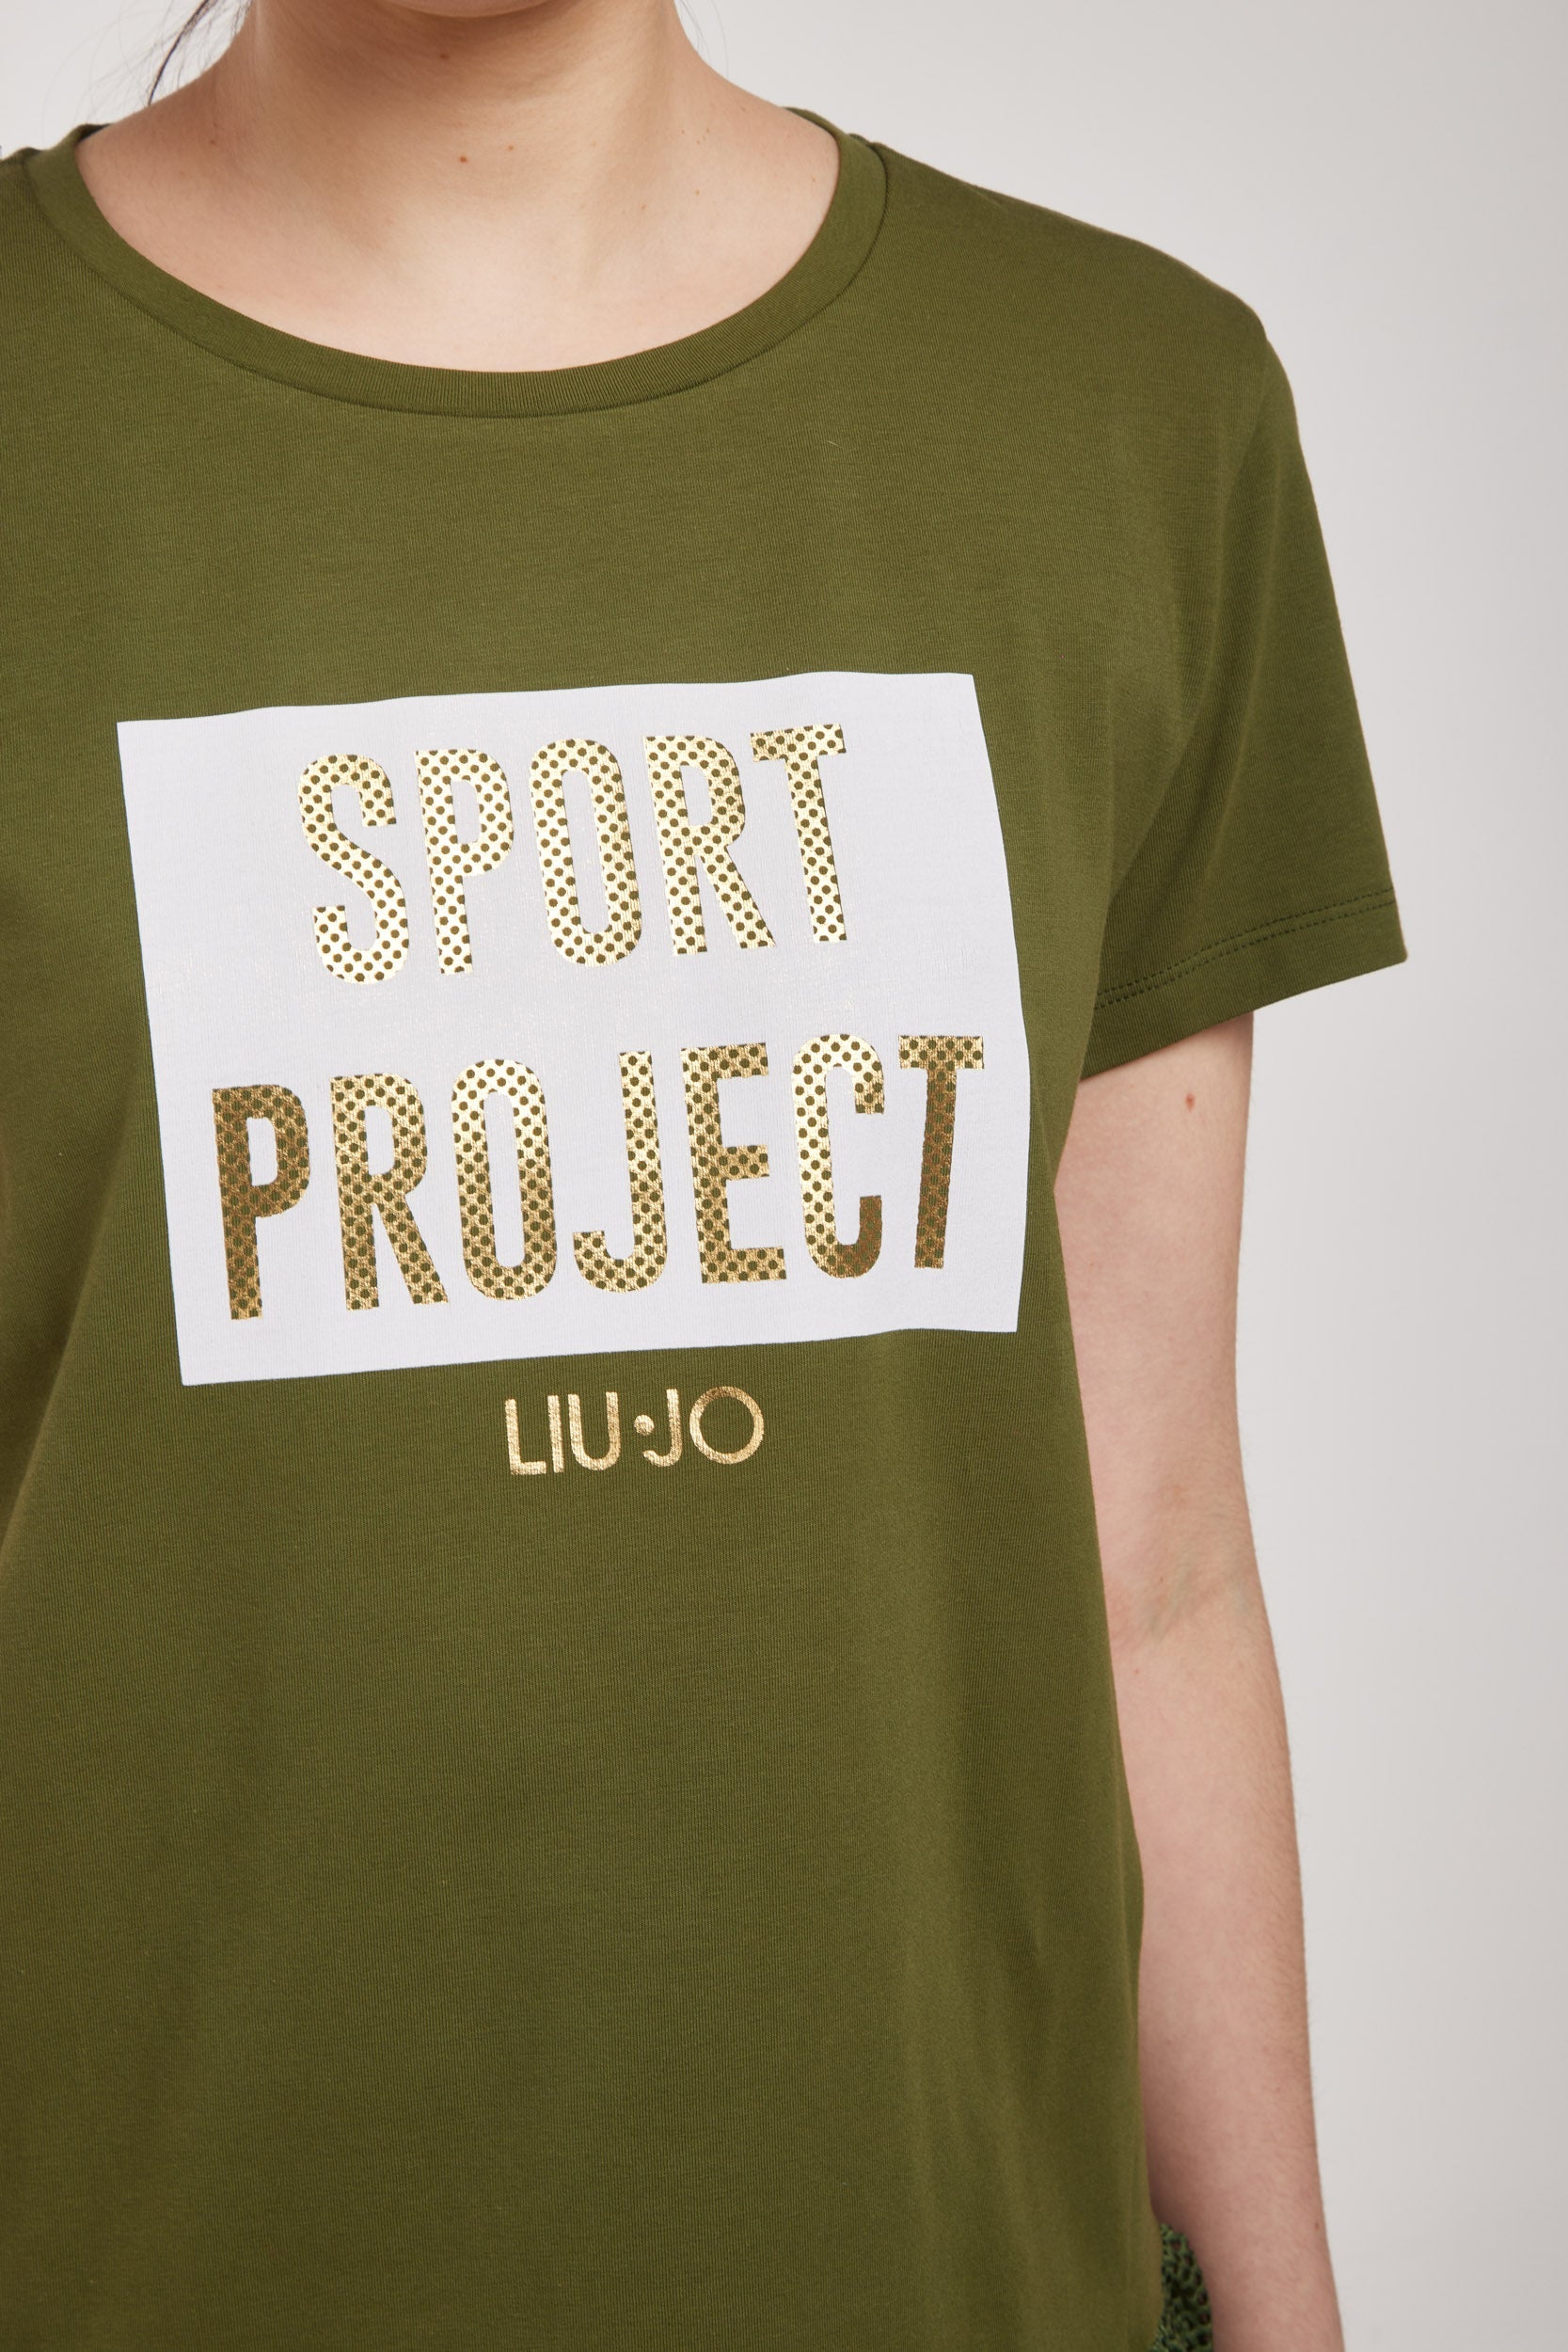 LIU-JO T-Shirt "SPORT PROJECT" Militärgrün